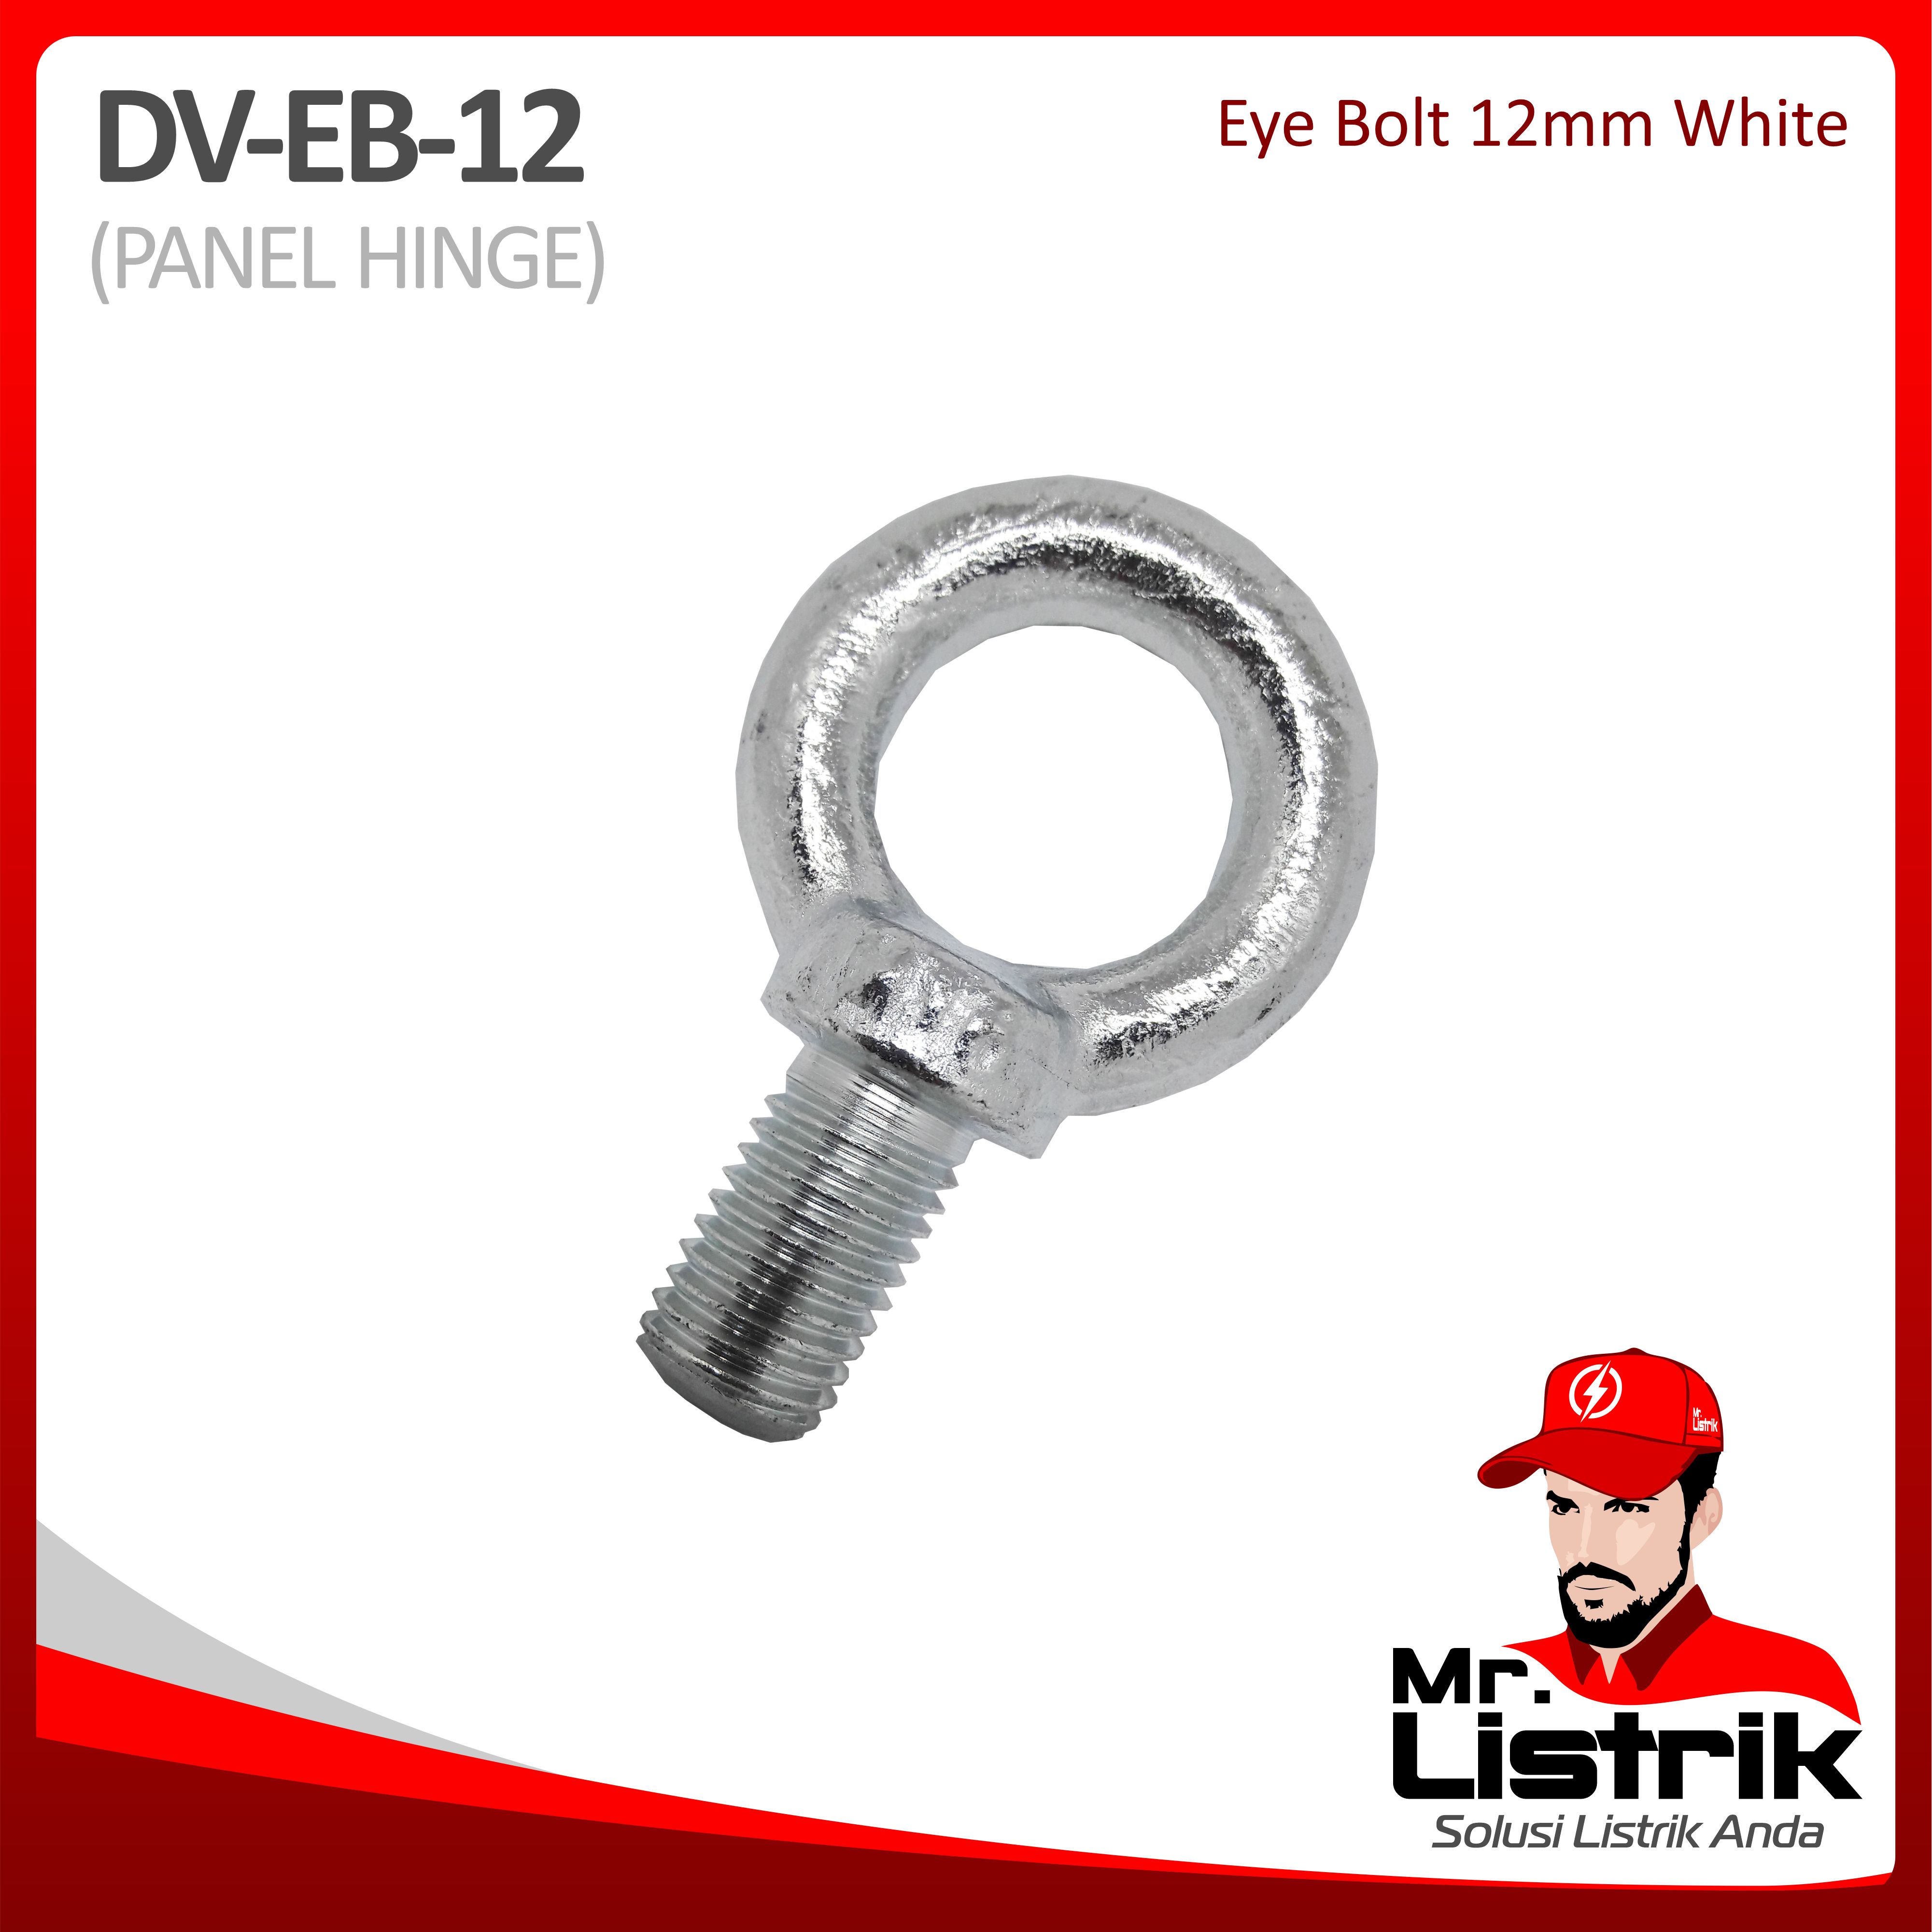 Eye Bolt 12mm White DV EB-12